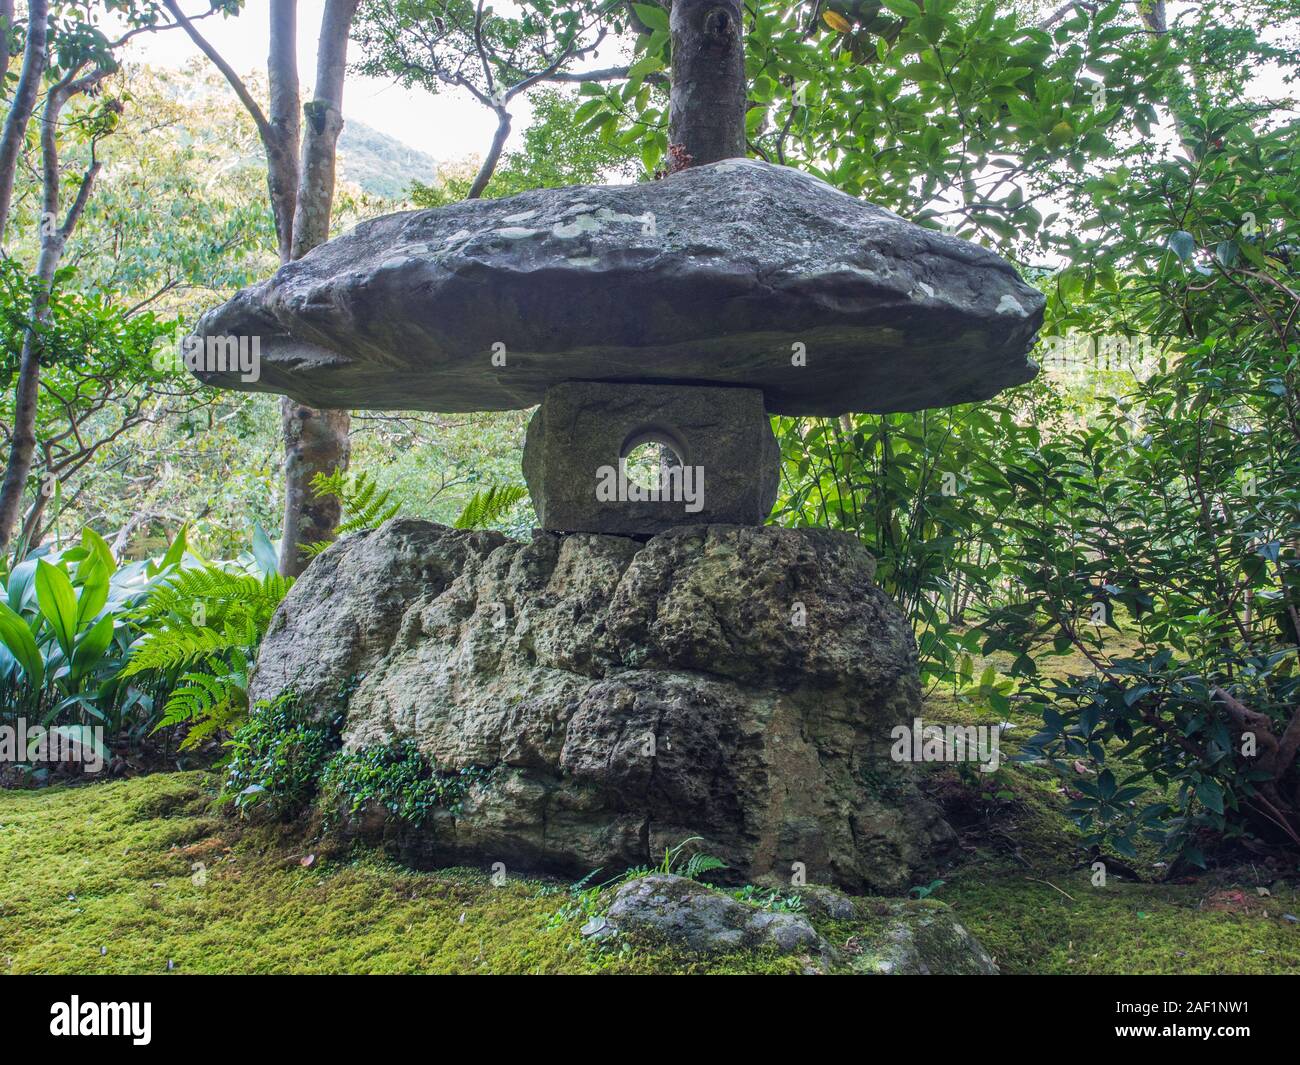 Feuille verte et rochers, un jardin japonais avec la lanterne de pierre, Garyusanso ishidoro, Ozu, Ehime, Shikoku, Japon Banque D'Images